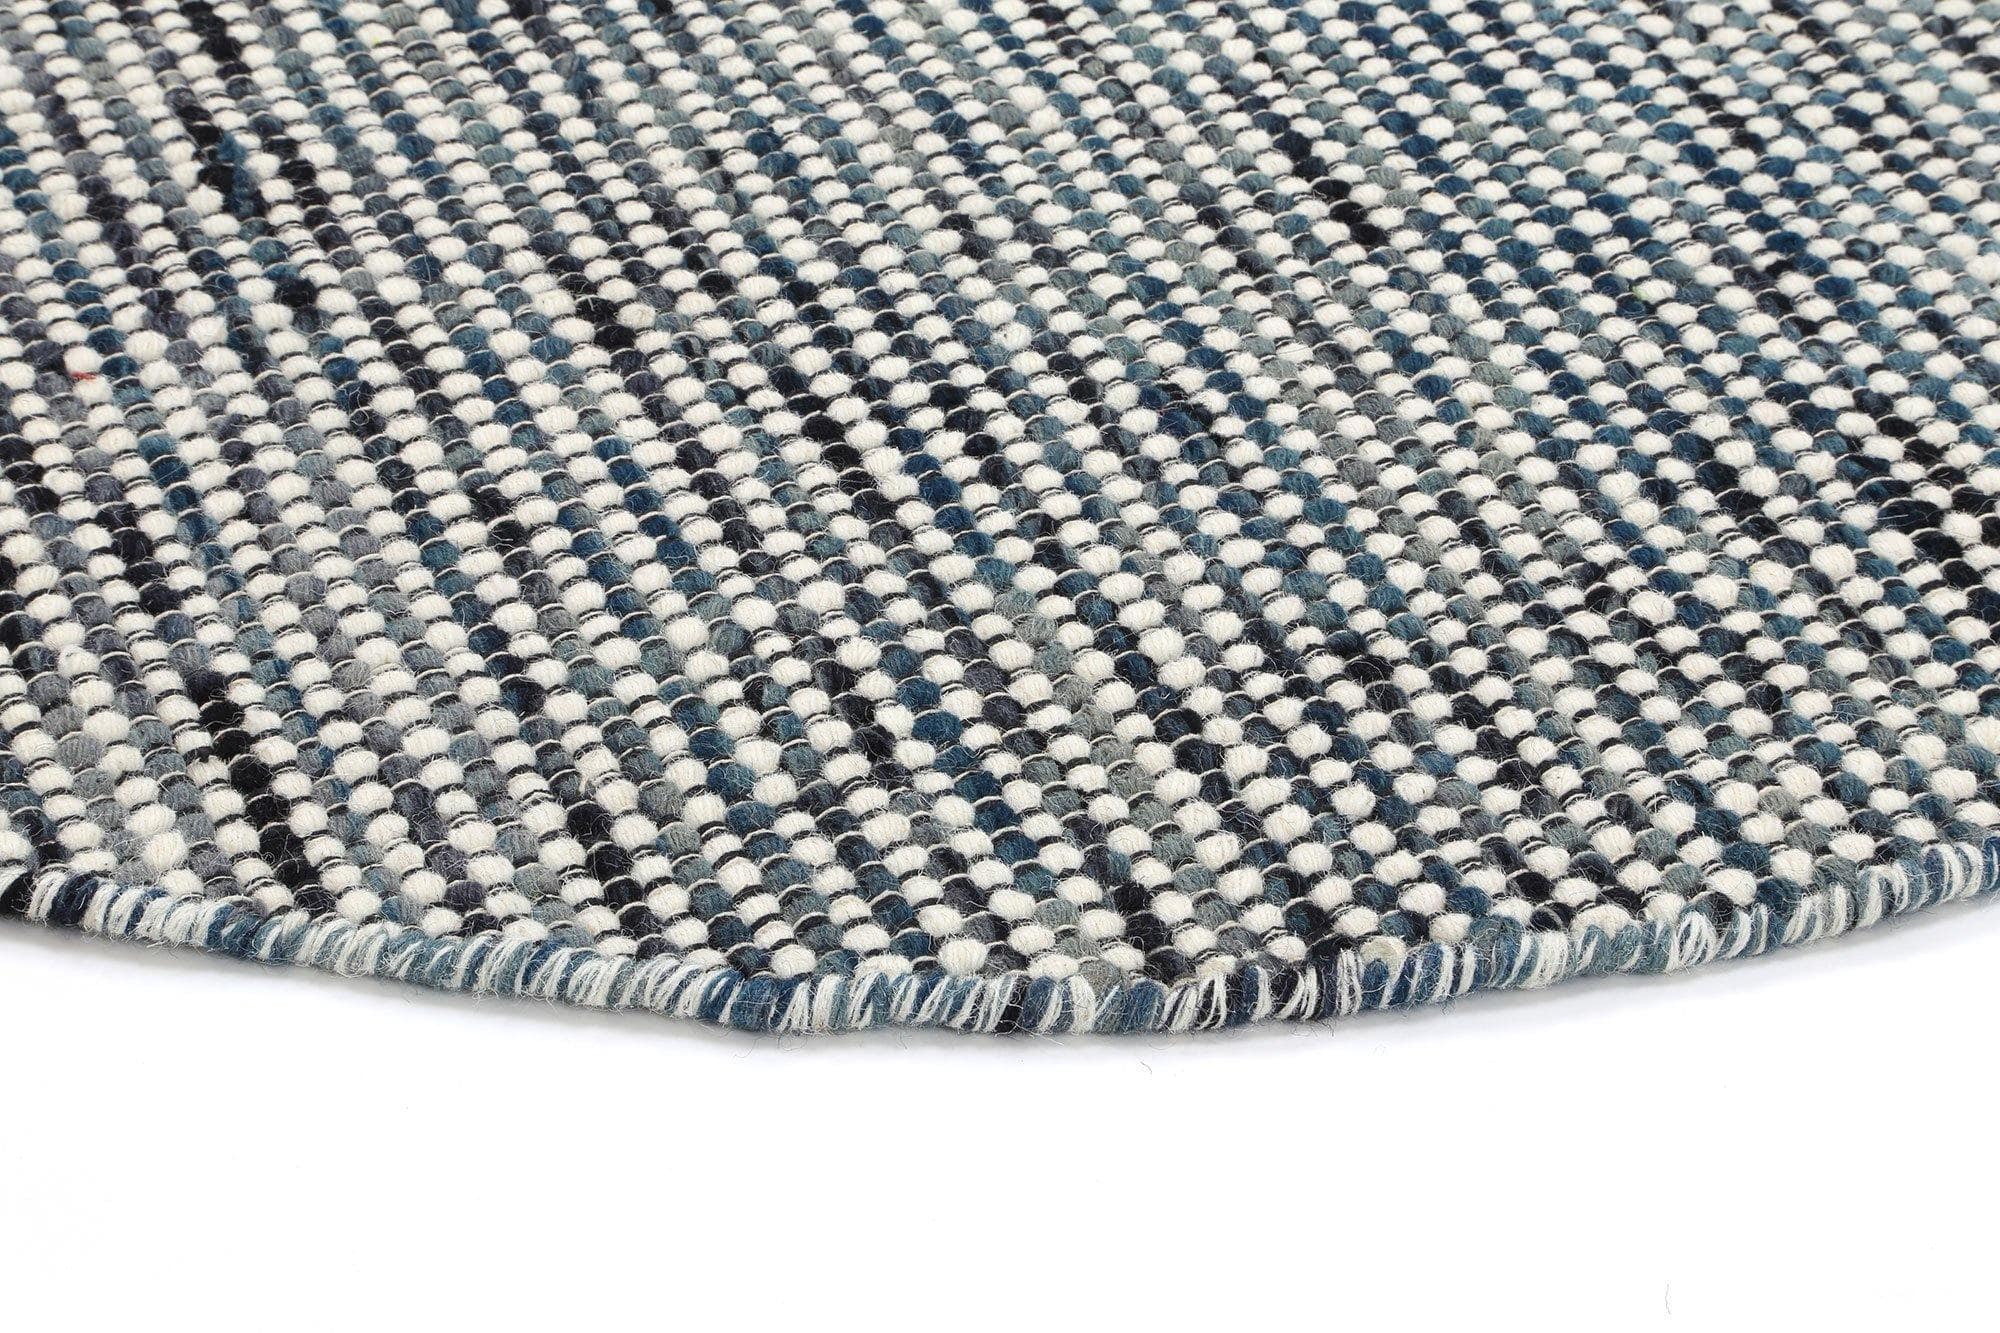 Brand Ventures Rugs Nordi Teal Blue Reversible Wool Round Rug